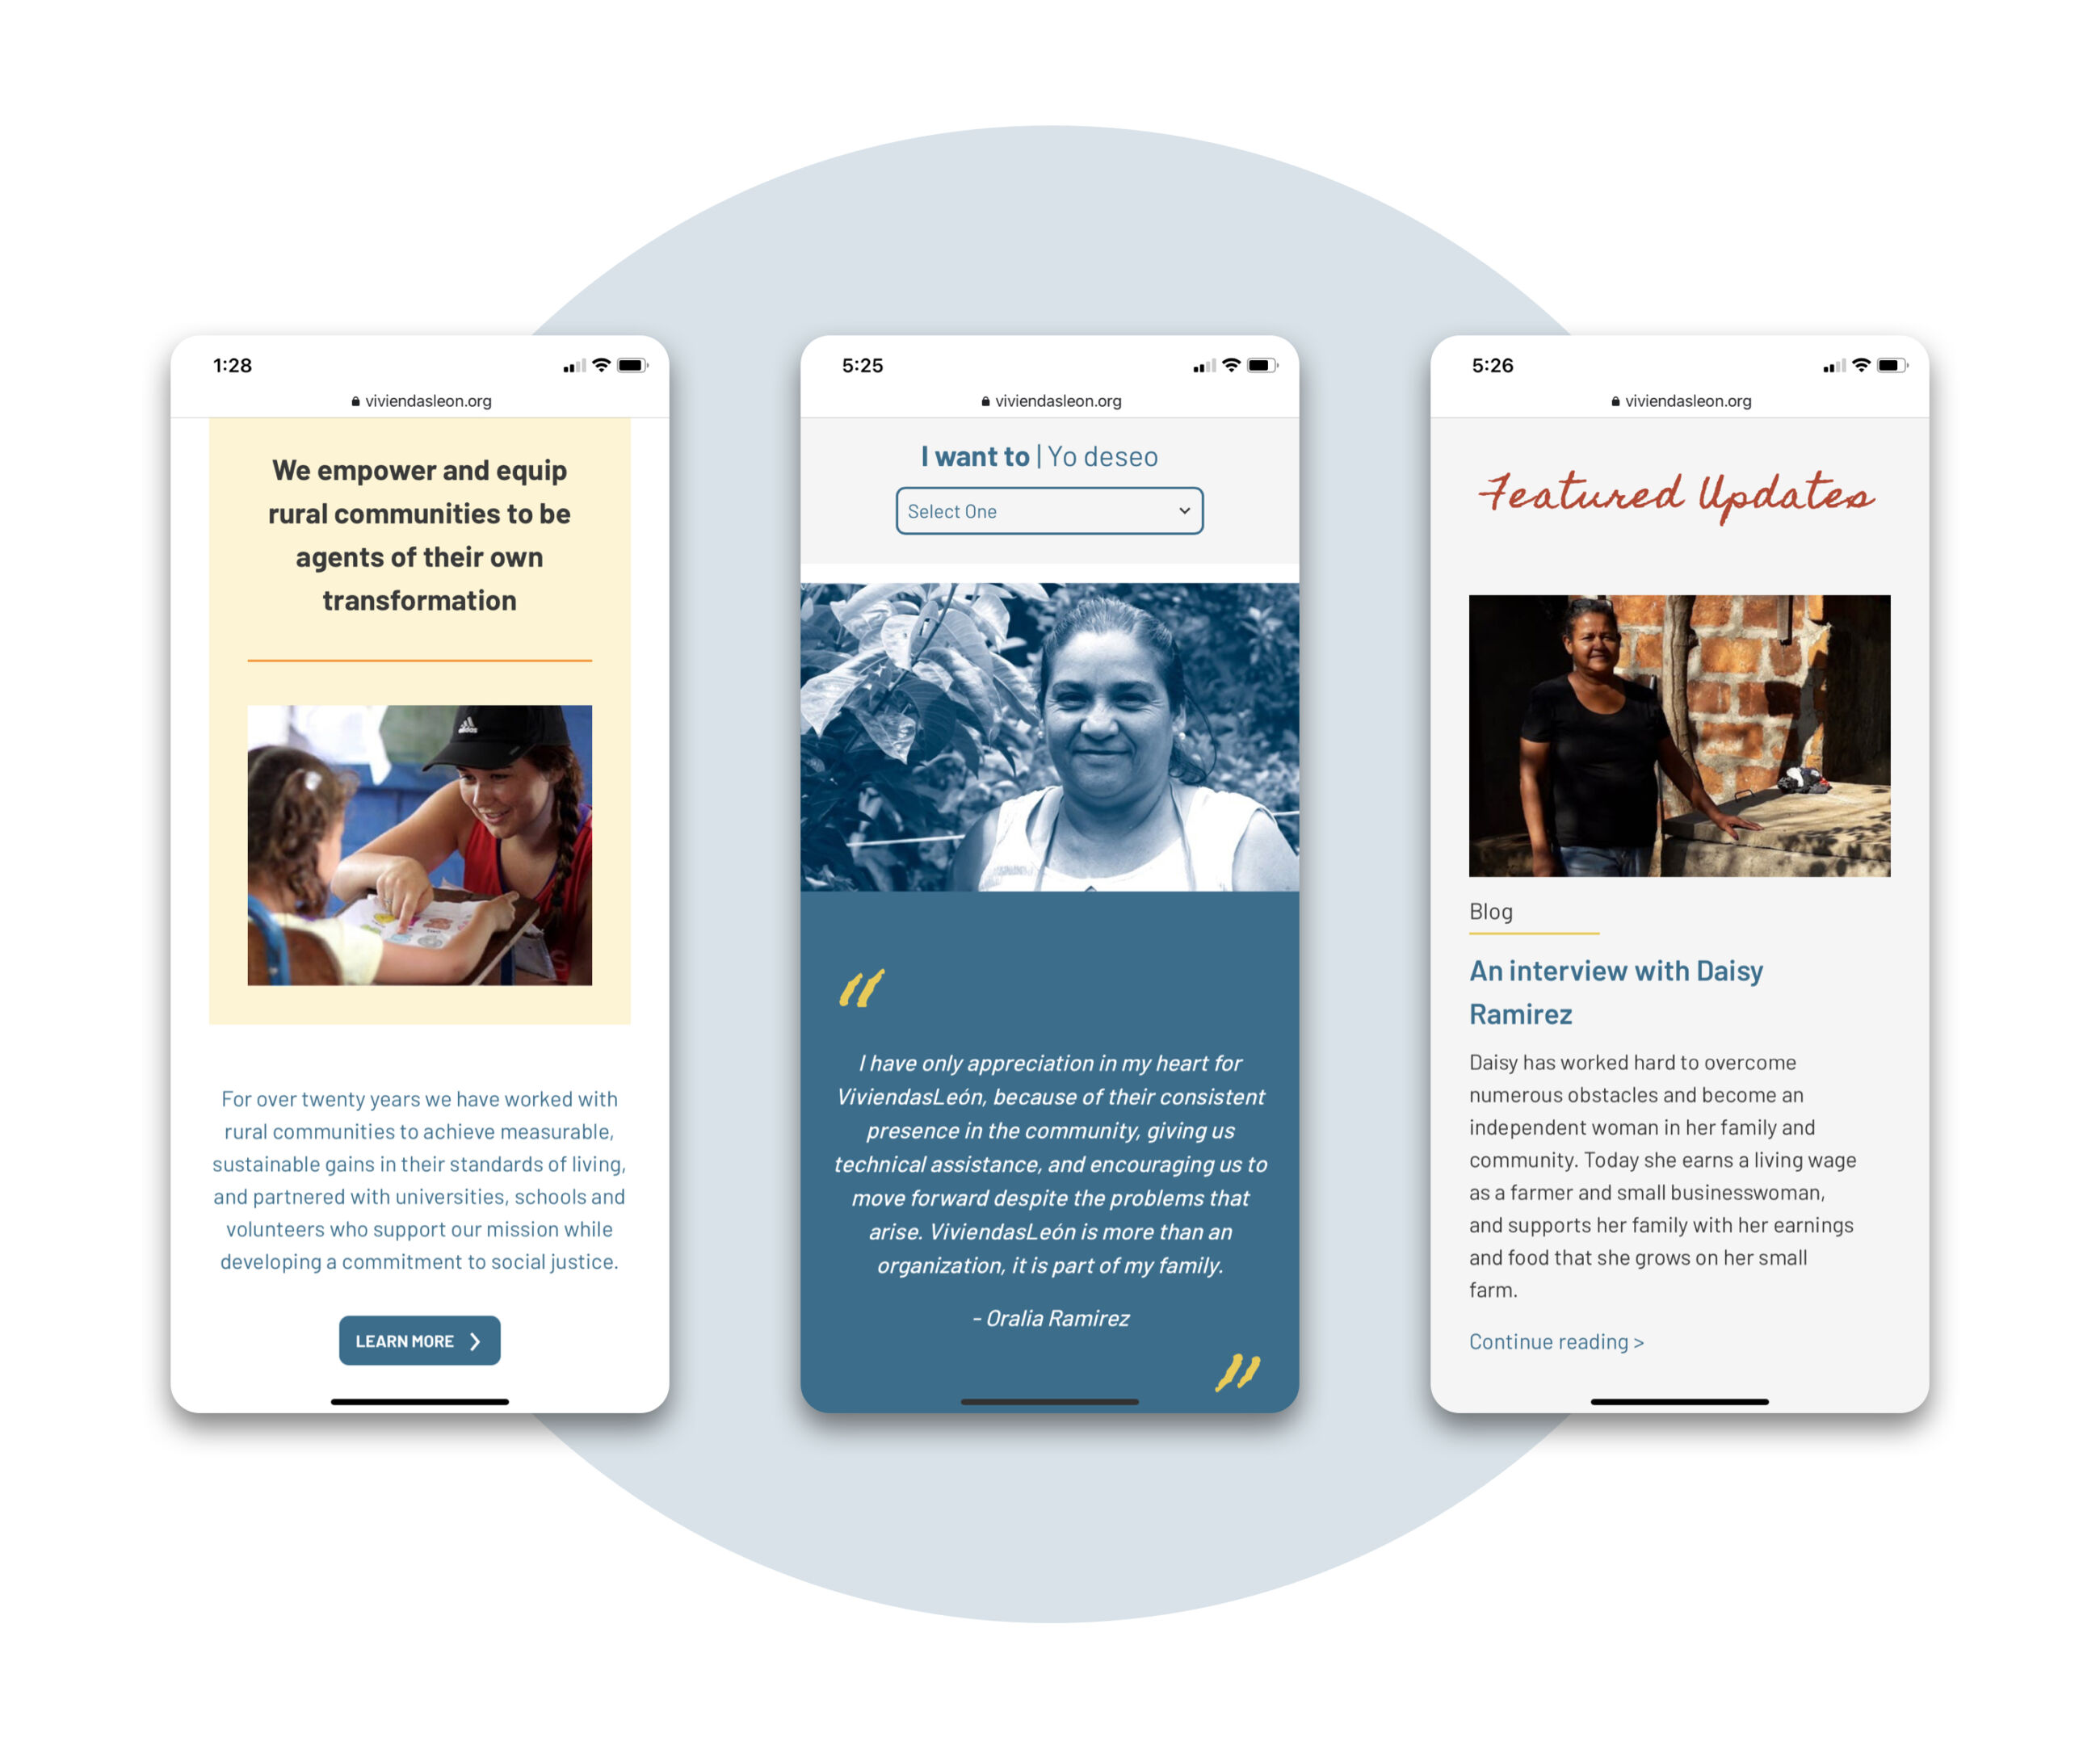 ViviendasLeón homepage showing responsive design in phone